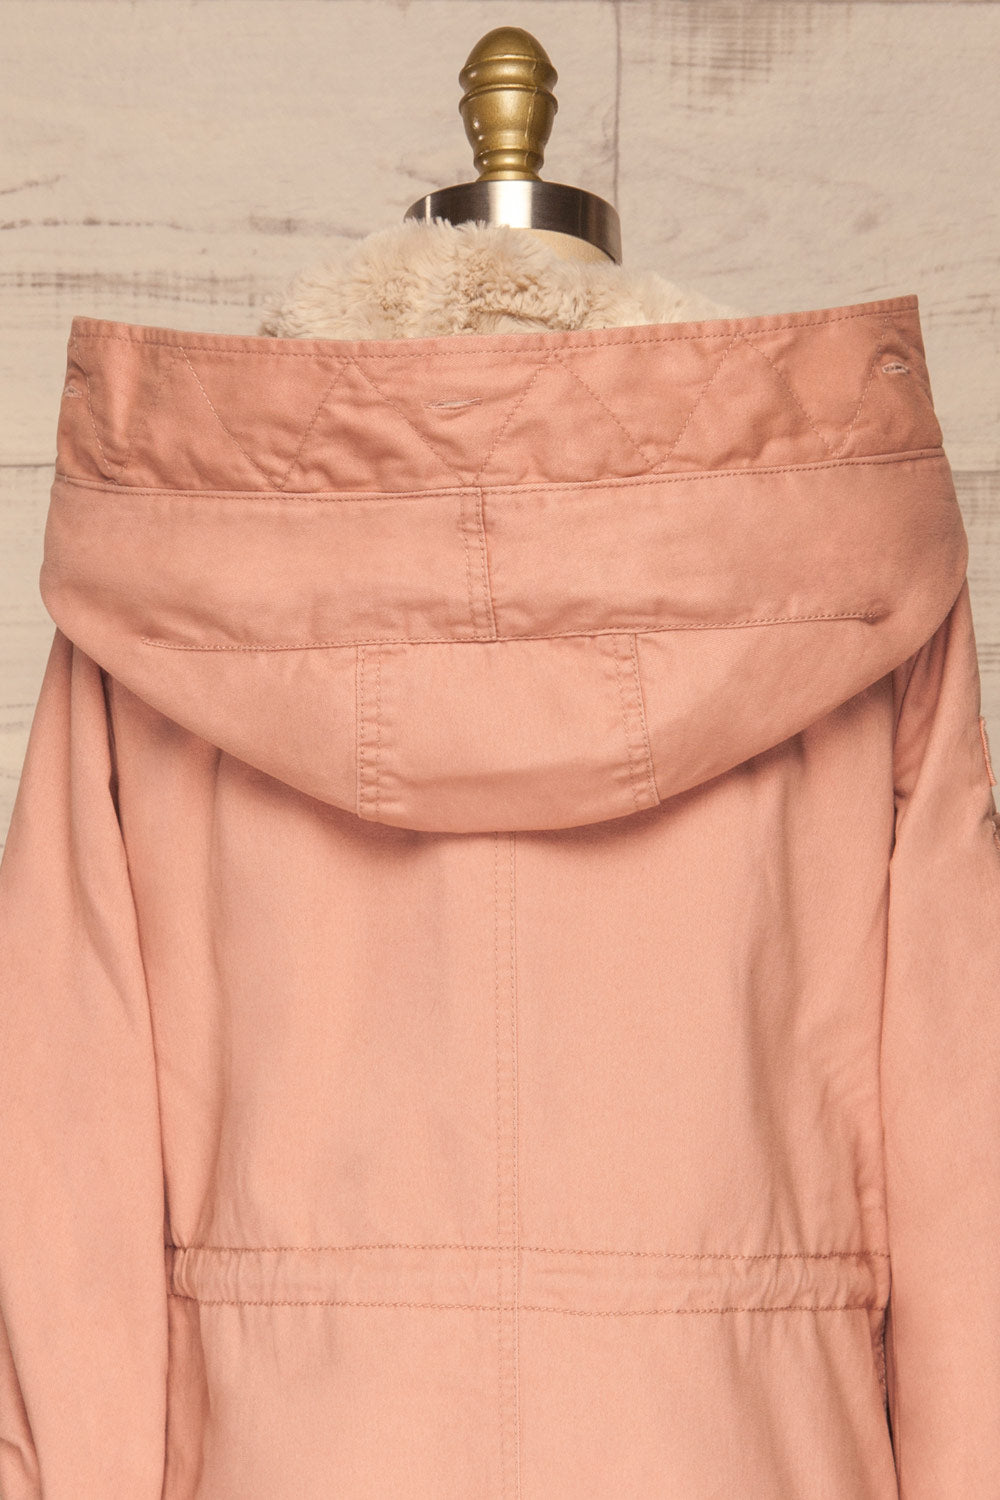 Varna Rose Pink Parka Coat with Faux Fur Hood | La Petite Garçonne back close-up without fur